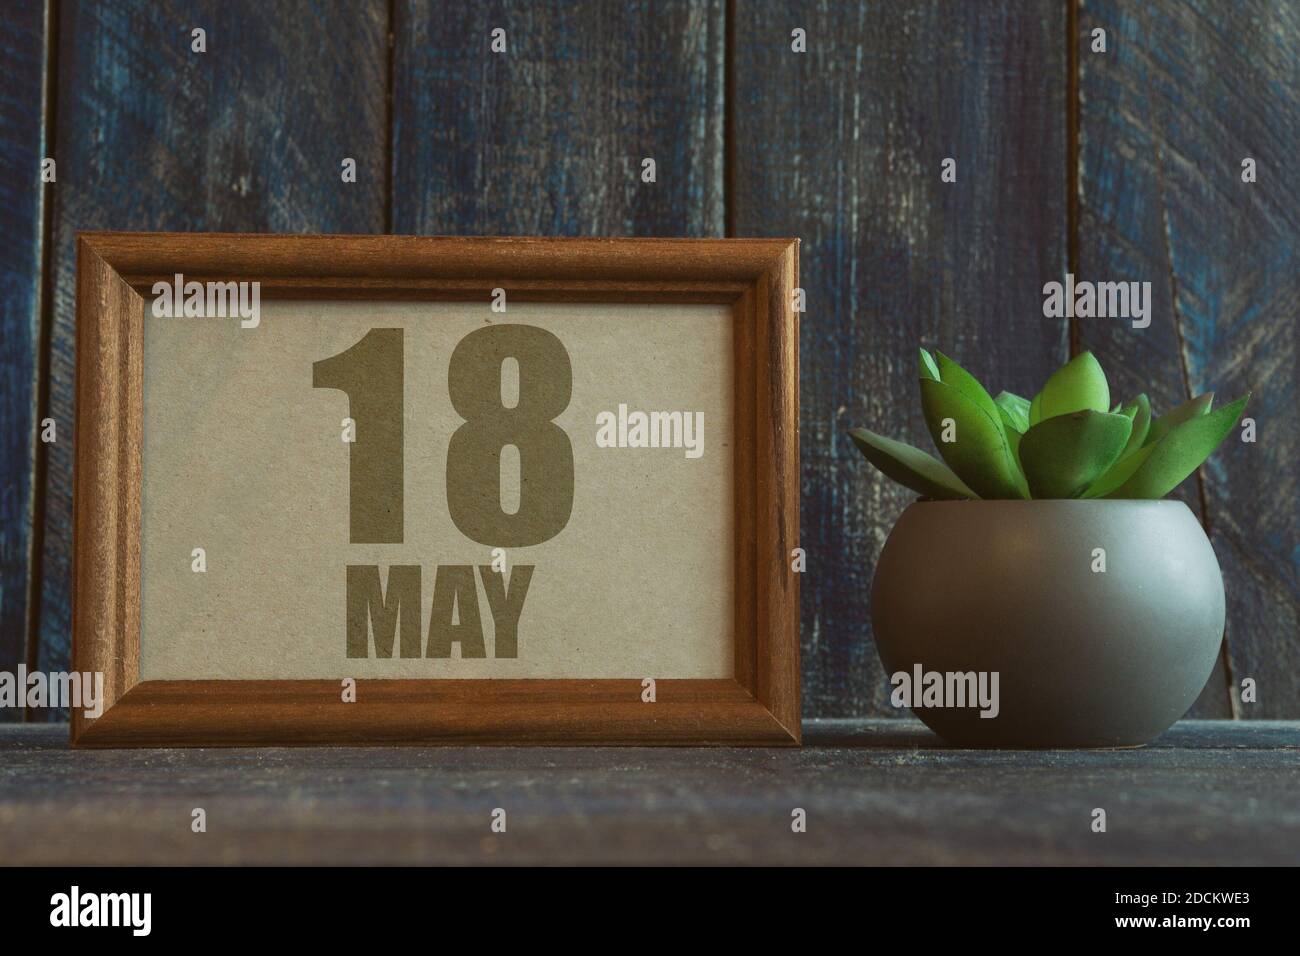 Mai 18th. Tag 18 des Monats, Datum im Rahmen neben Sukkulente auf hölzernen Hintergrund Frühlingsmonat, Tag des Jahres Konzept Stockfoto